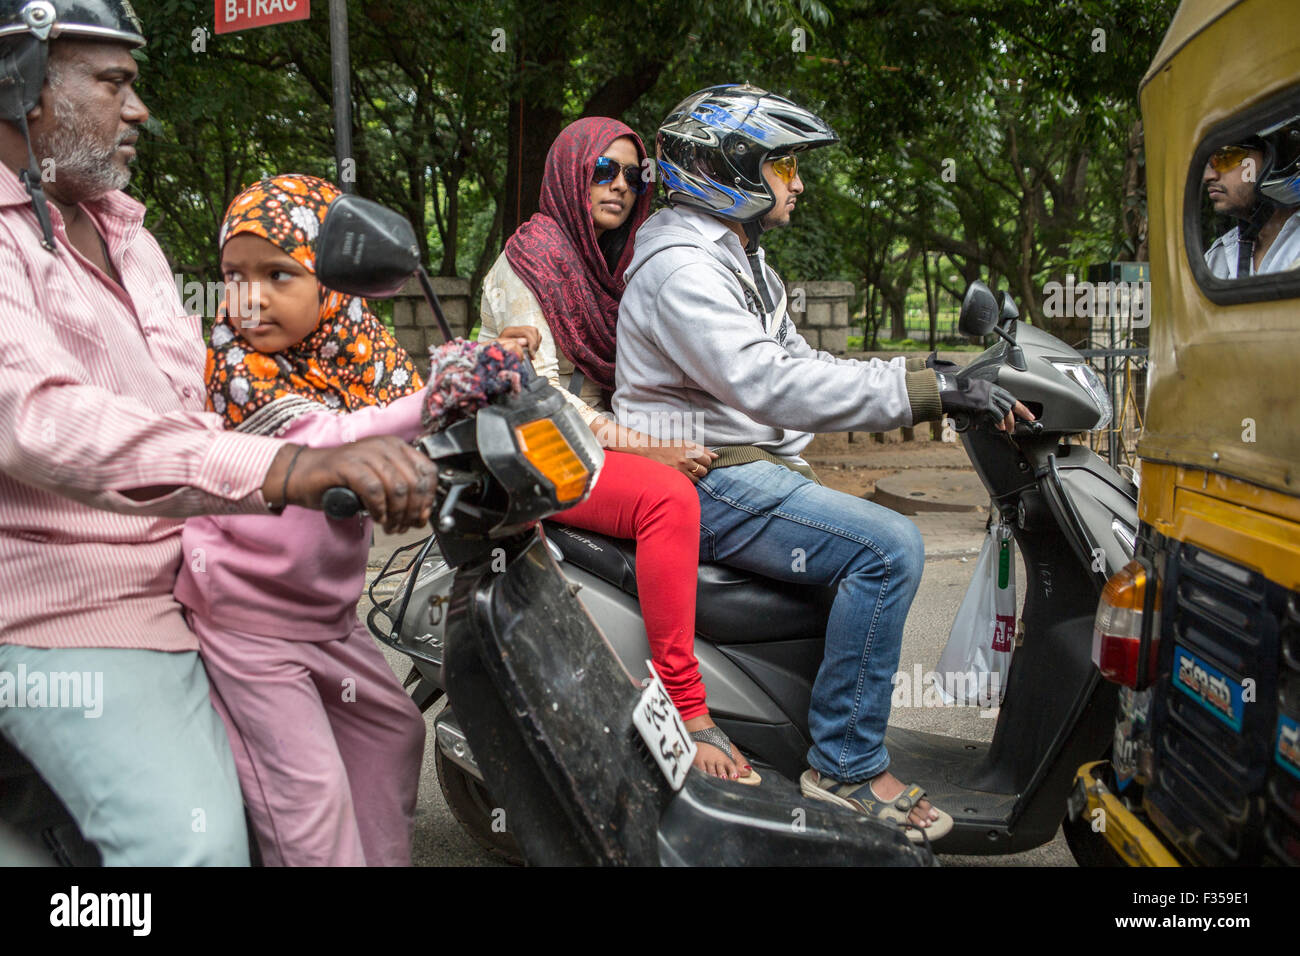 Scooter drivers and passengers, Bengaluru, Karnataka, India Stock Photo